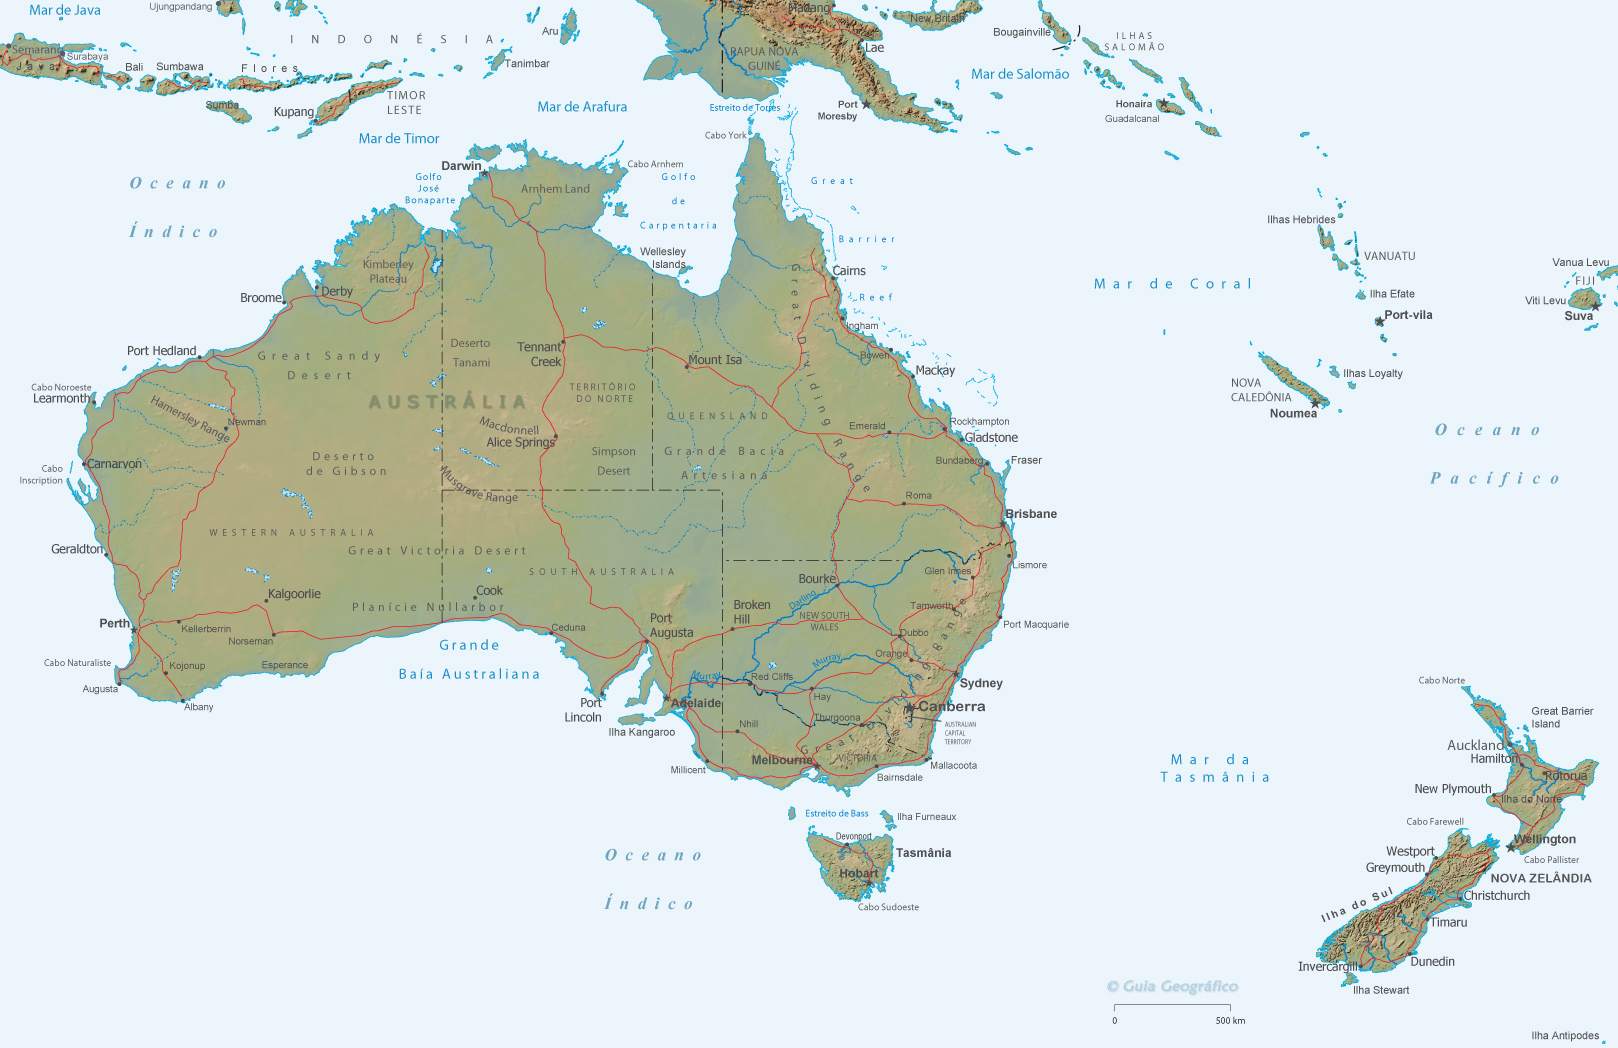 Mapa Austrália Pacifico